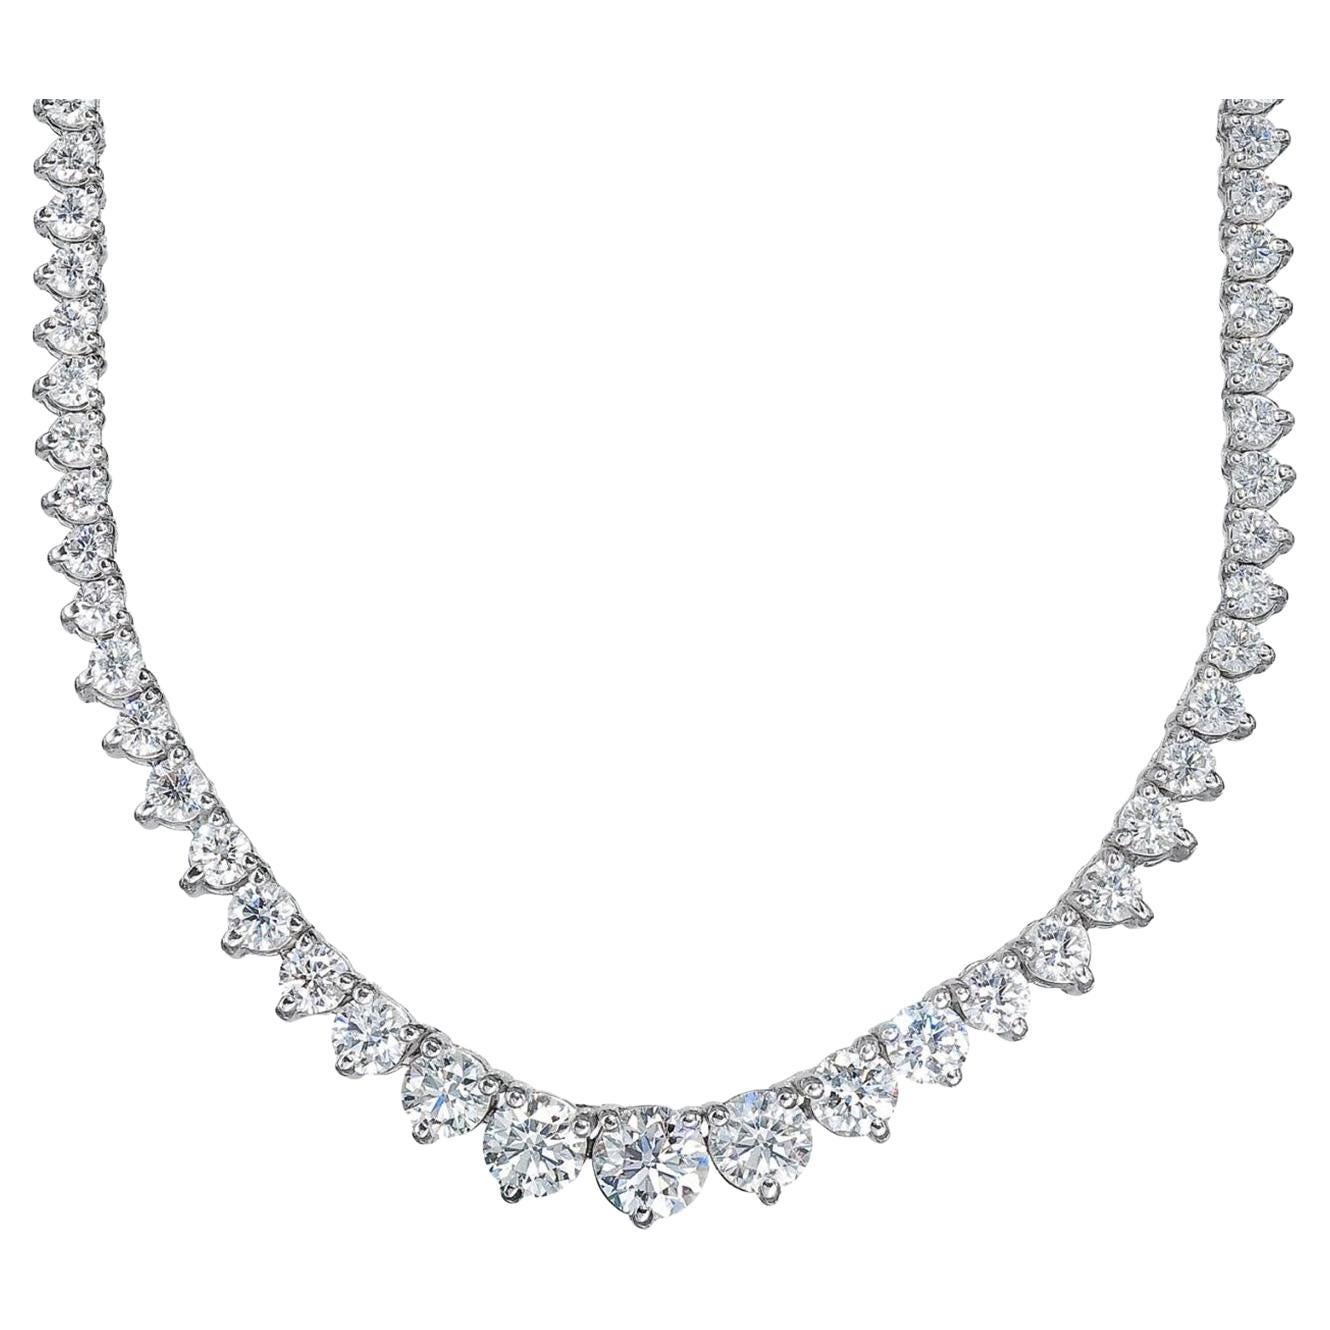 Abgestufte Tennis-Halskette mit 3 runden Diamanten in Zackenform.  D7.11ct.t.w.